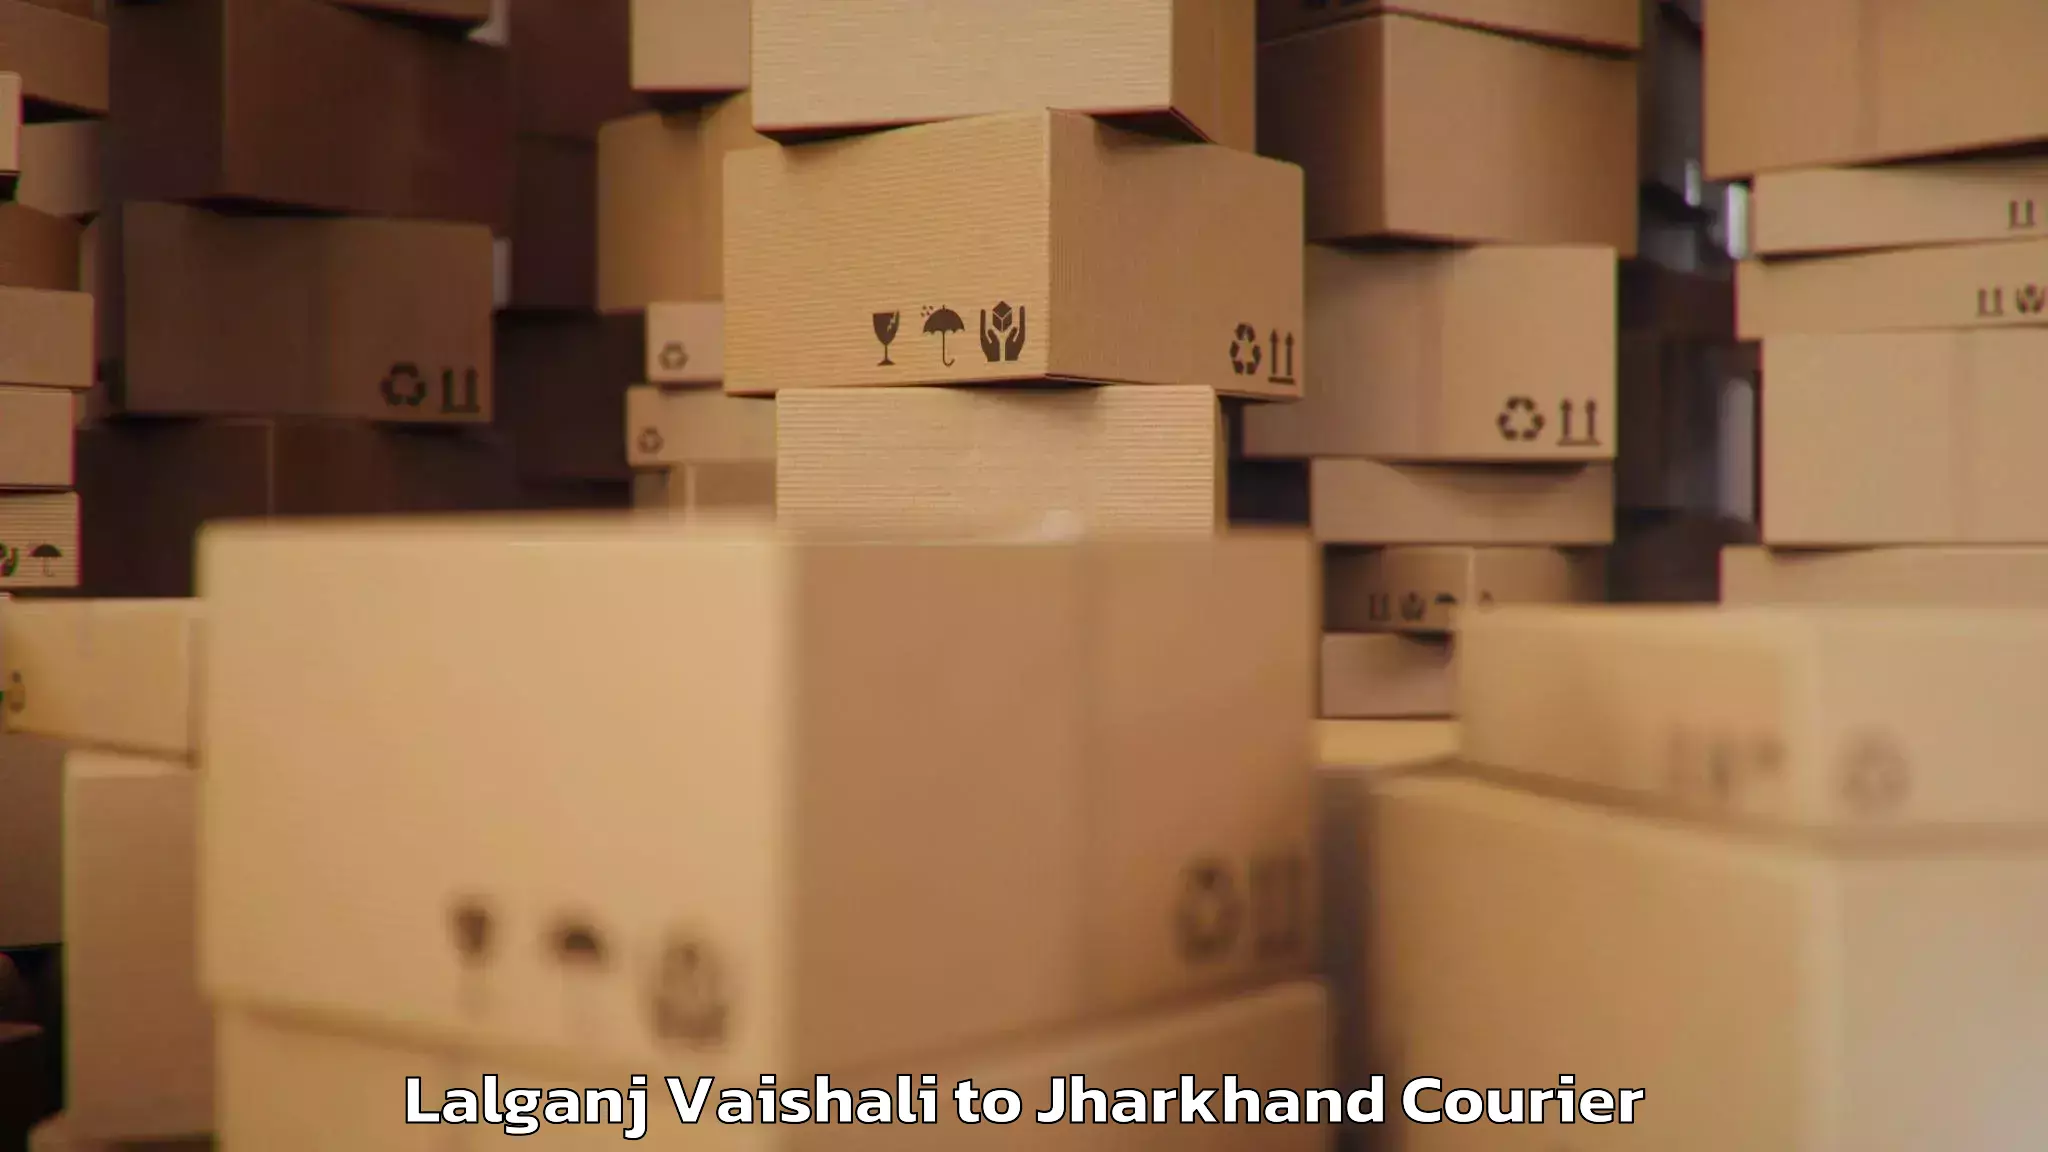 Luggage transport company Lalganj Vaishali to Medininagar